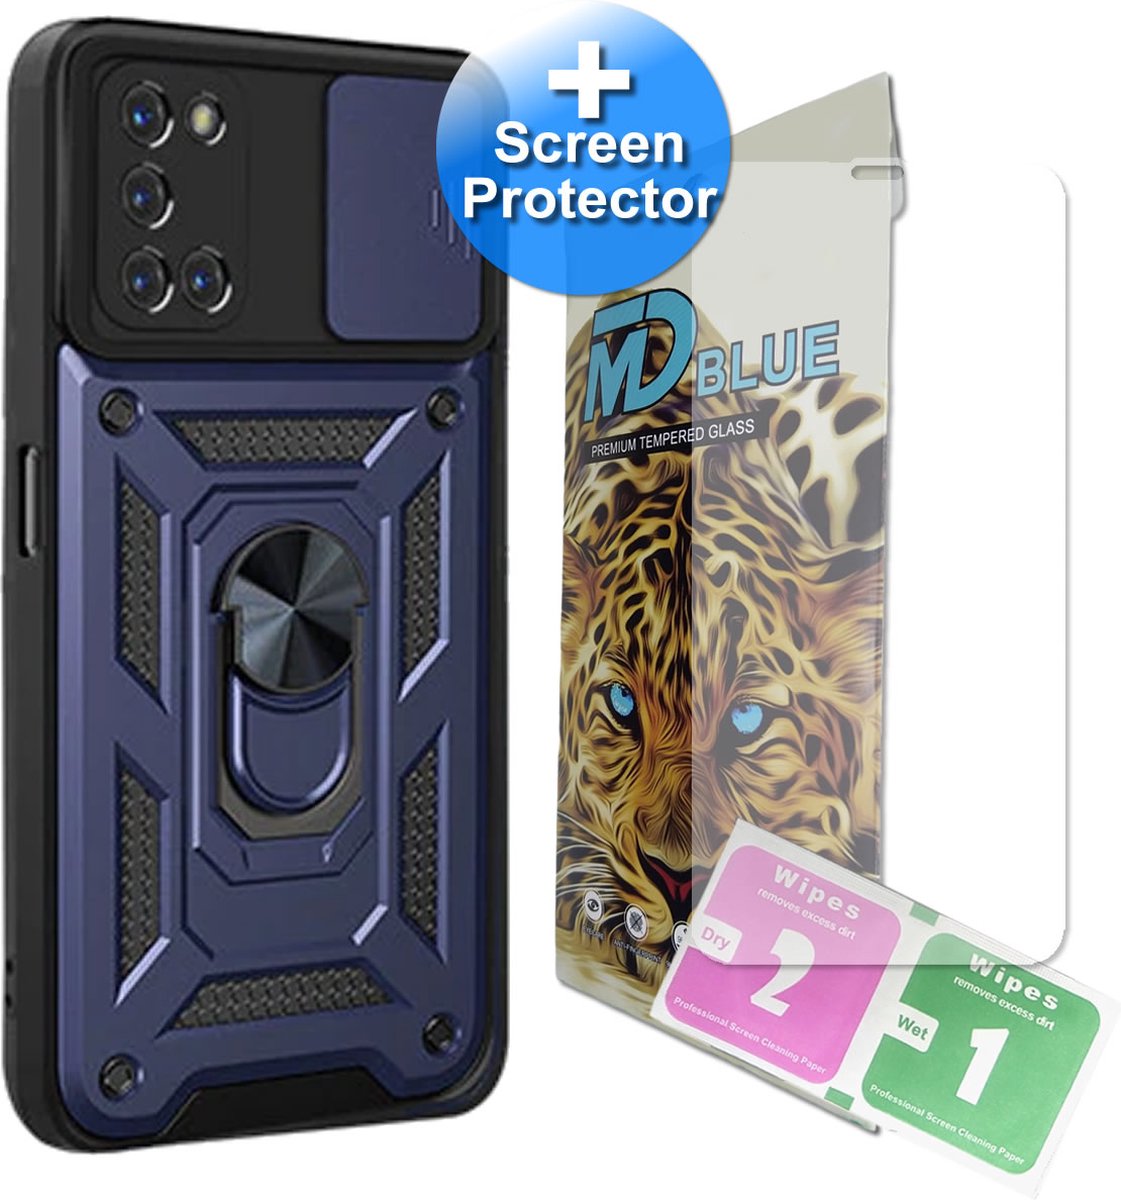 Telefoonhoesje geschikt voor iPhone 8 - inclusief screenprotector - Back Cover - Antishock - Met uitklapbare Ring - Donker Blauw